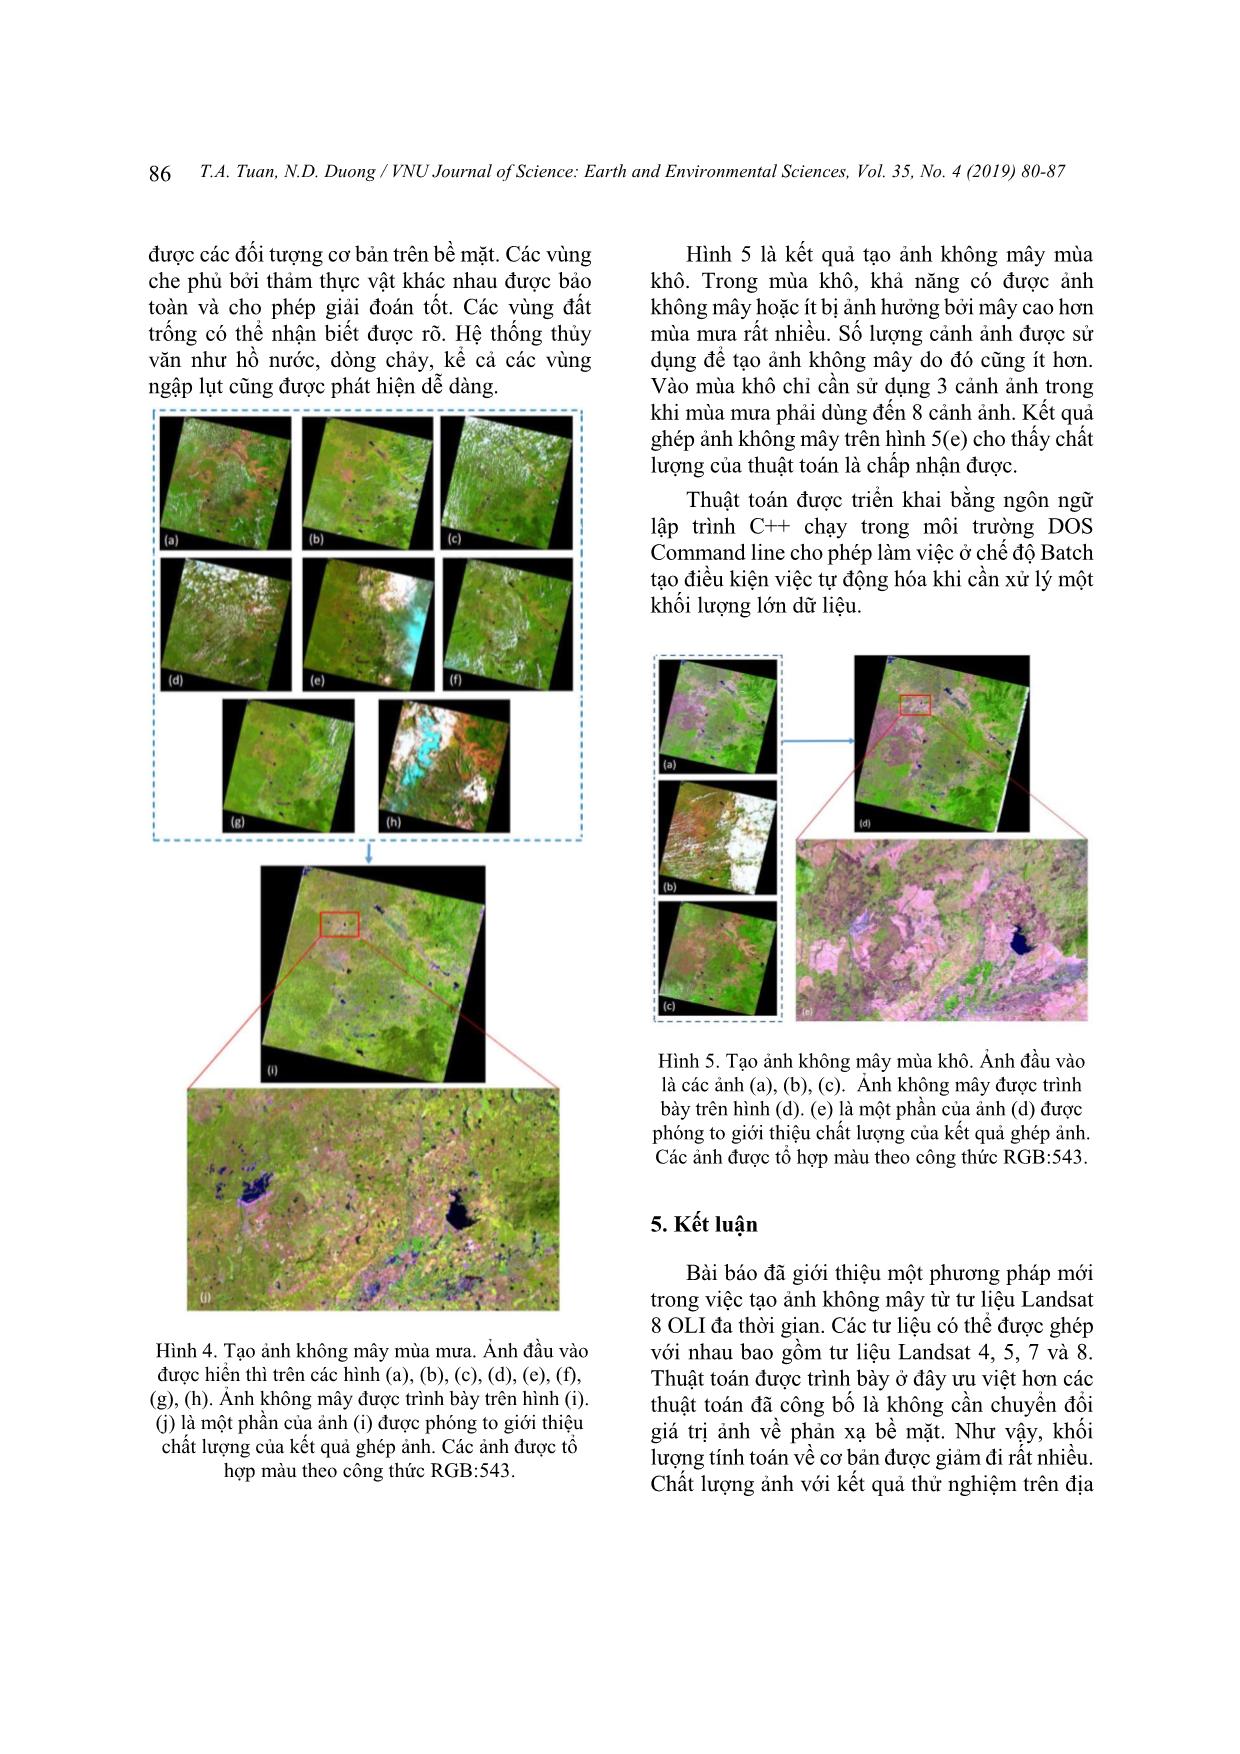 Tạo ảnh không mây phục vụ phân loại lớp phủ với tư liệu Landsat đa thời gian-Nghiên cứu thử nghiệm tại tỉnh Đắk Lắk trang 7